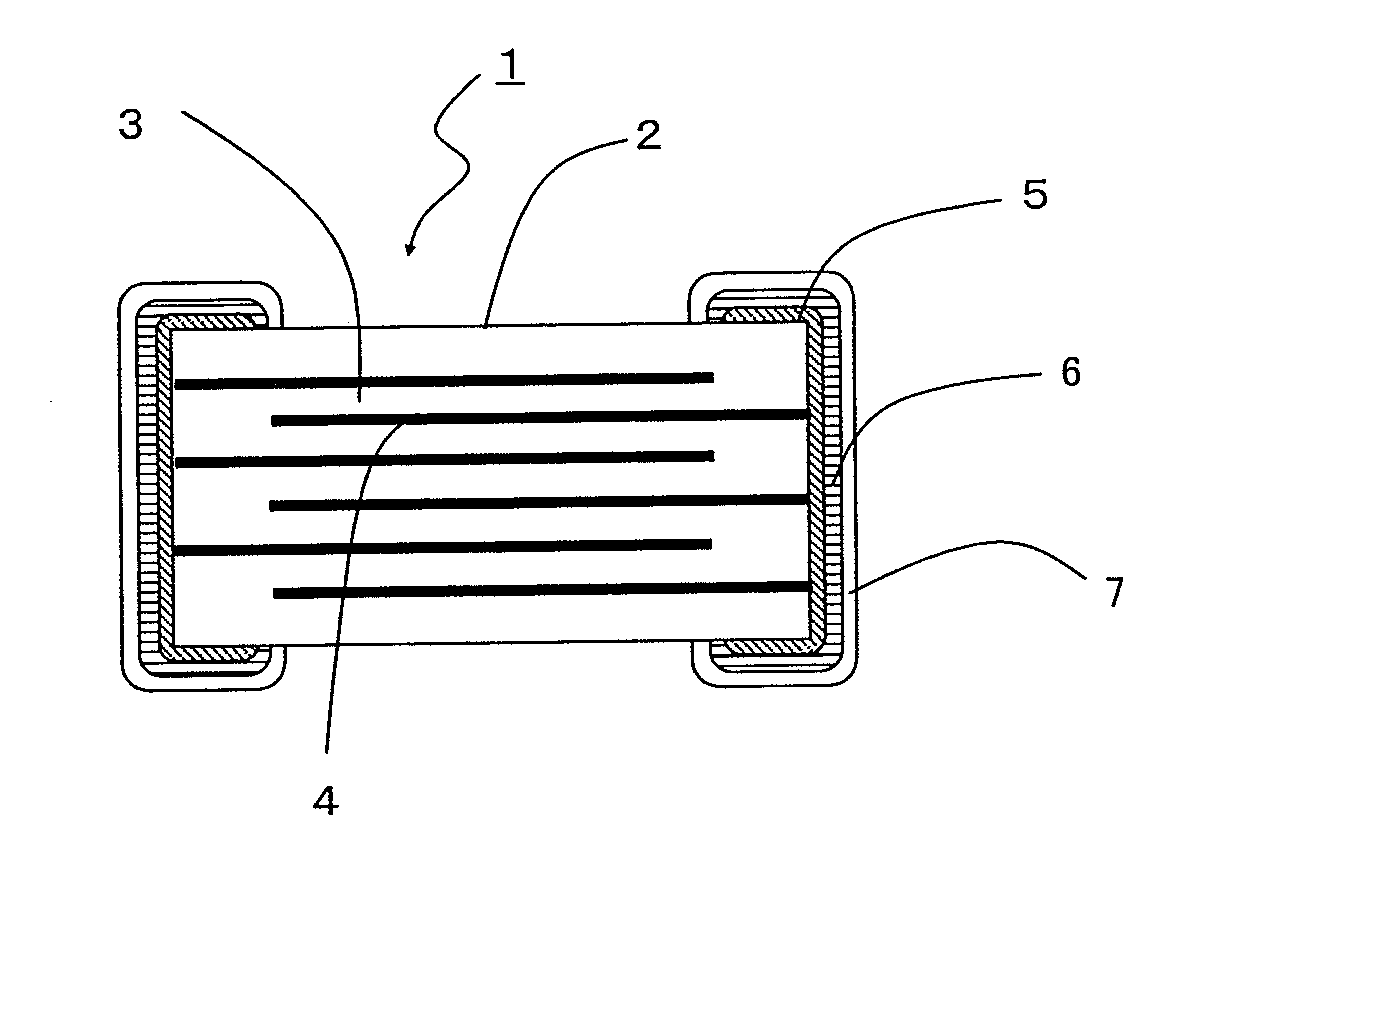 Multi-layer ceramic capacitor